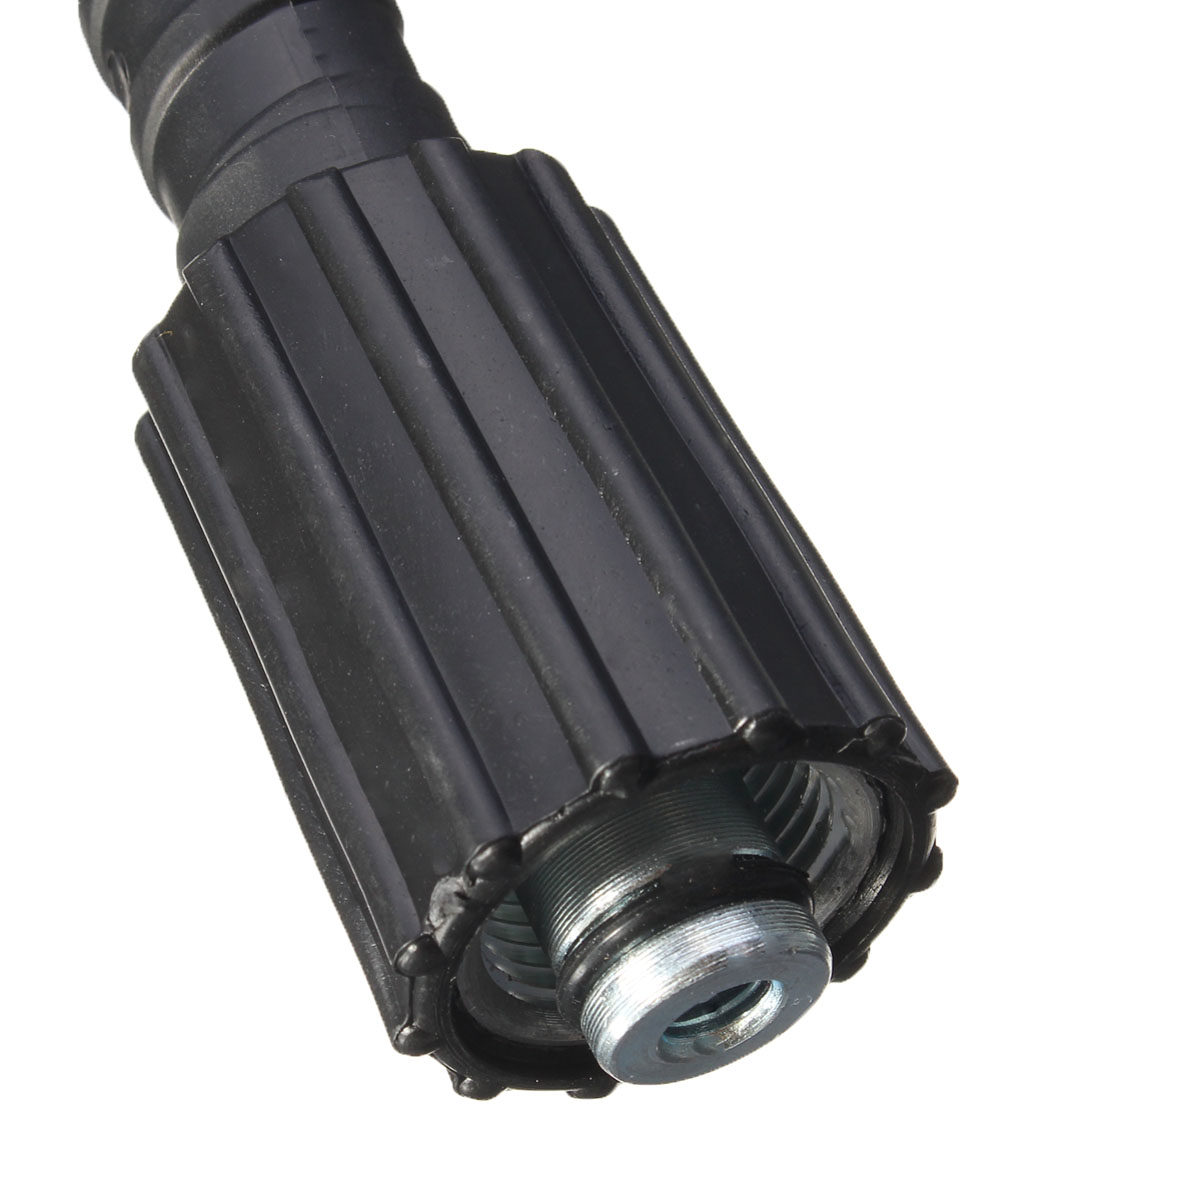 5M-5800PSI-Pressure-Washer-Hose-22mm-Pump-End-Fitting-for-Karcher-K2-Cleaner-1299990-8